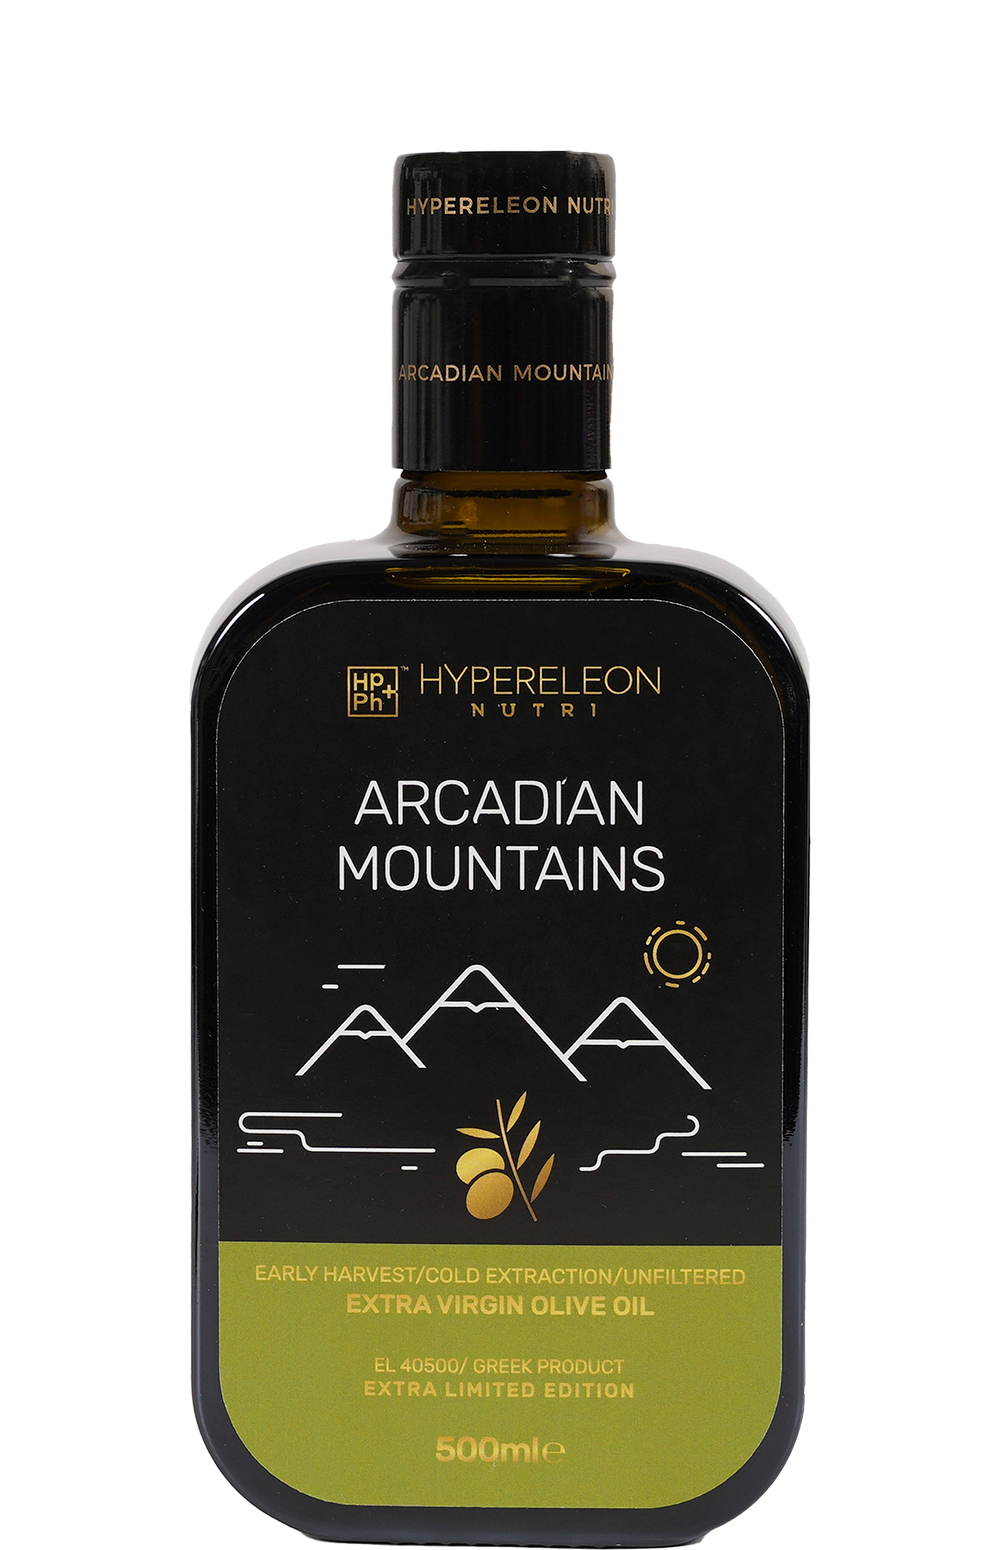 Hypereleon Nutri – Arcadian Mountains